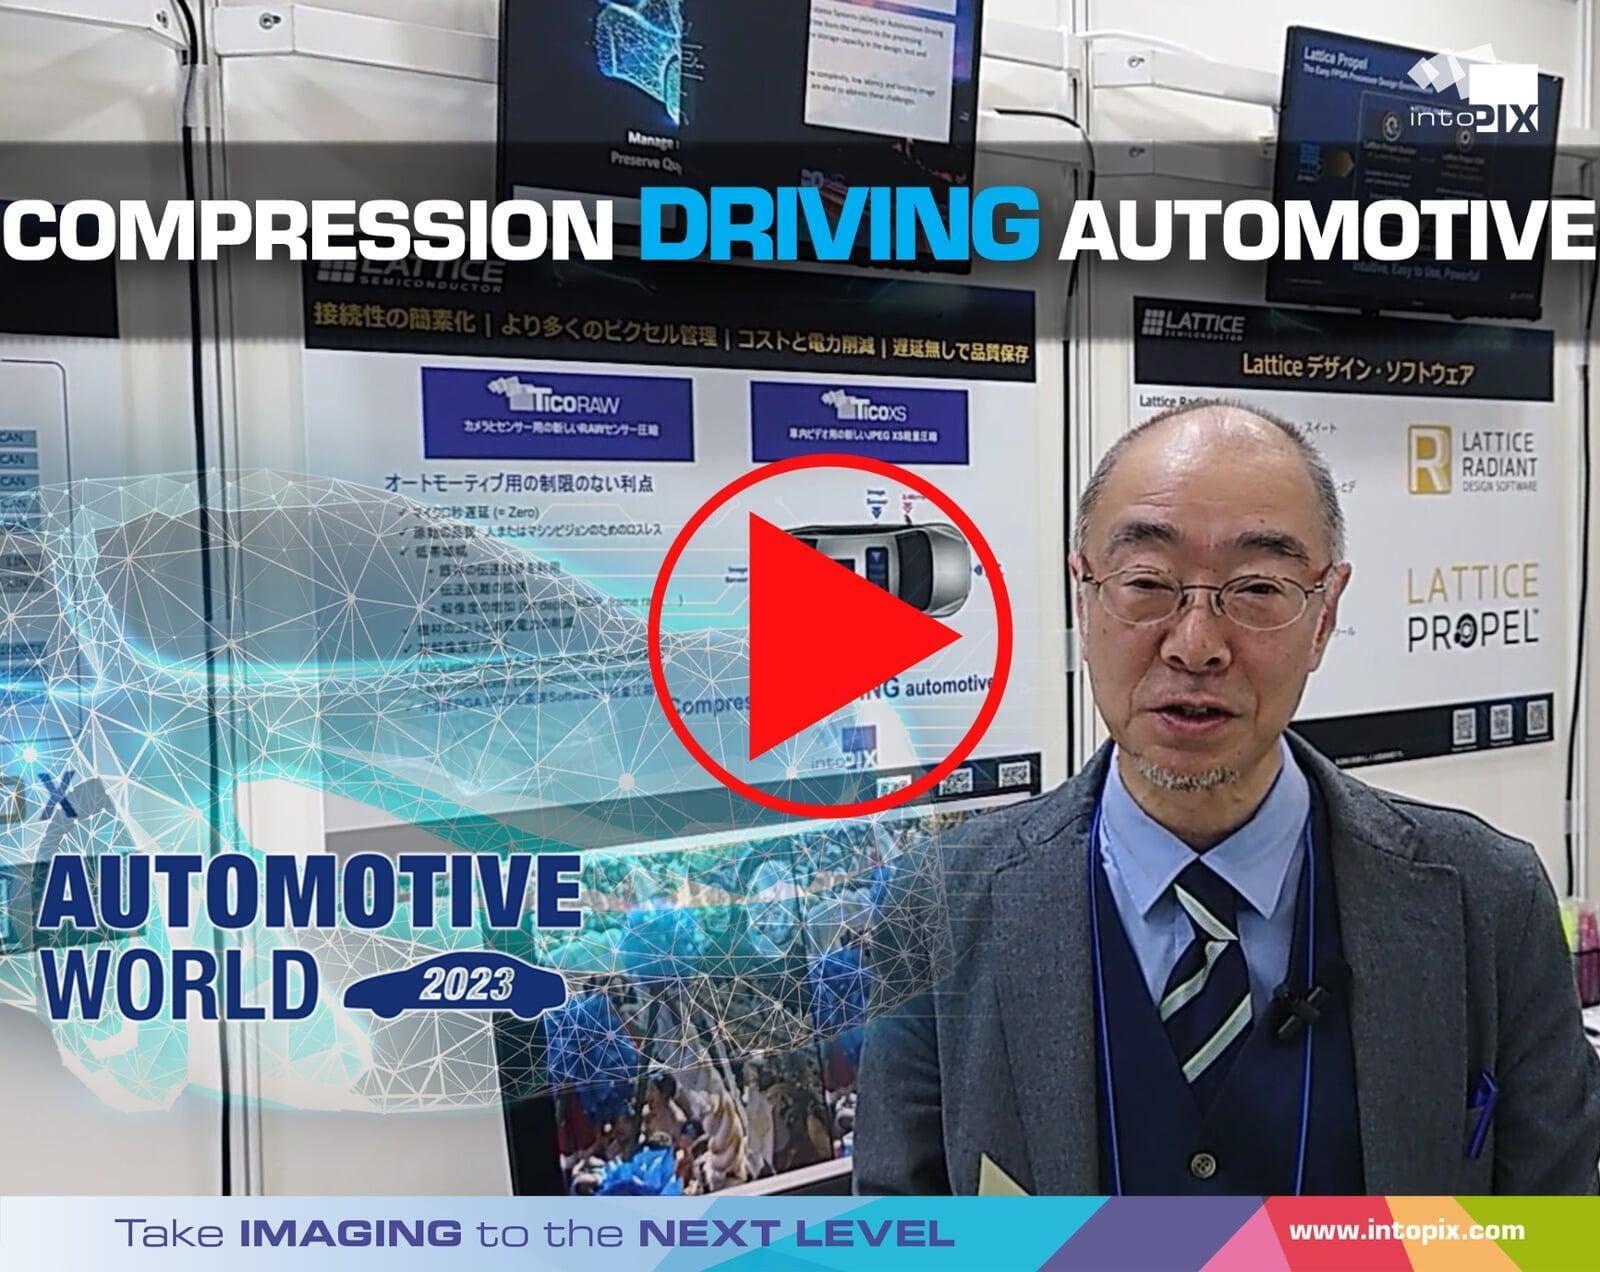 Démonstration vidéo japonaise de Automotive World 2023 : la compression au service de l'automobile